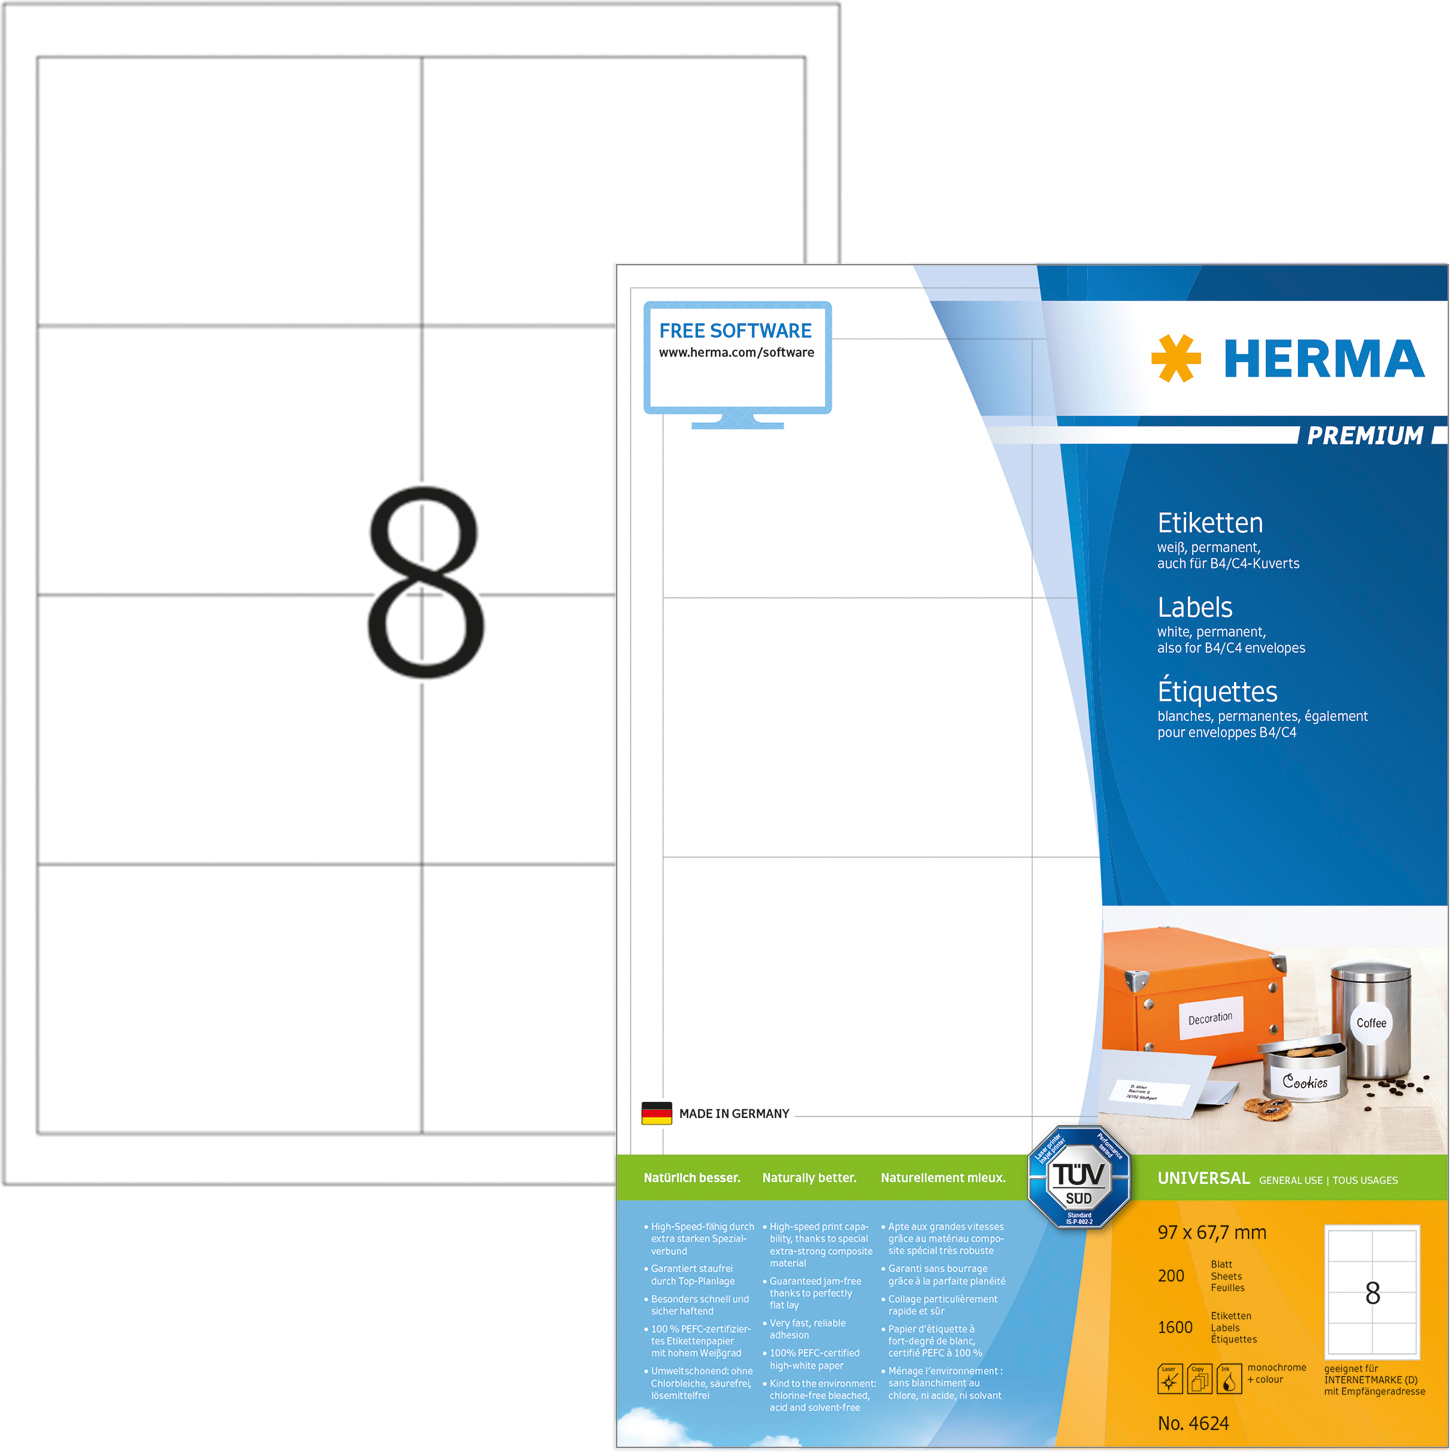 HERMA Etiquettes Premium 96,5×67,7mm 4624 blanc 1600 pcs.